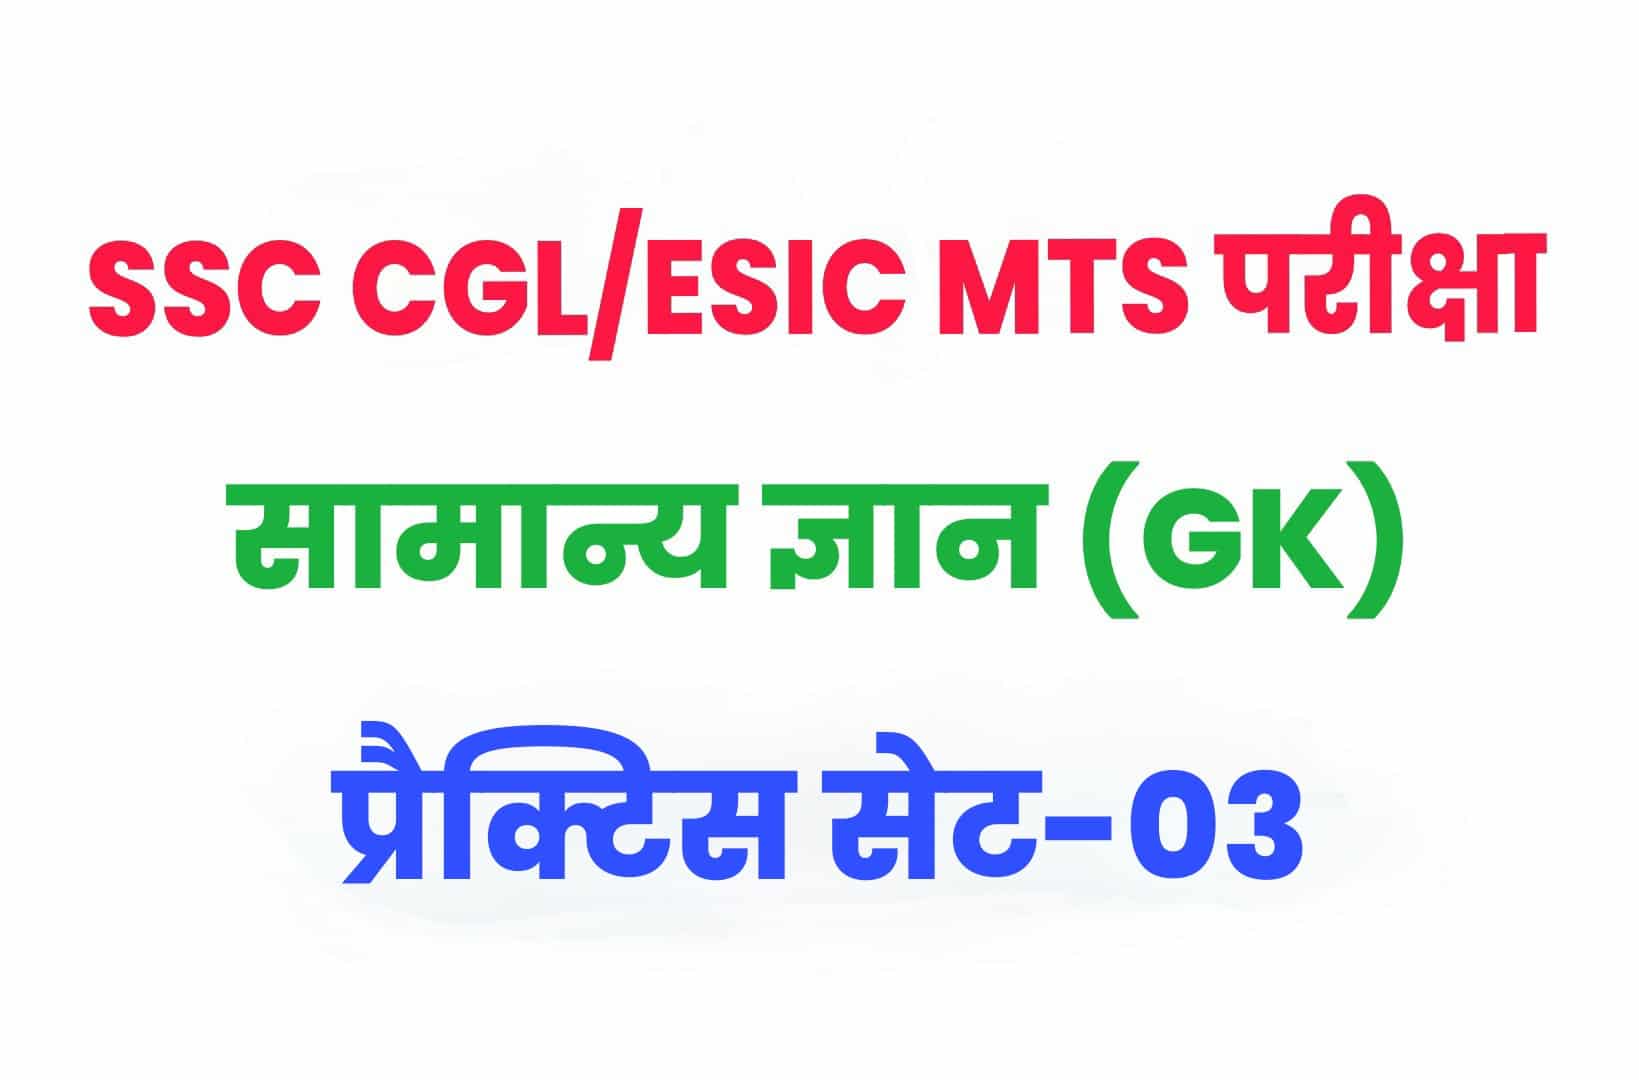 SSC CGL/ESIC MTS GK/GS प्रैक्टिस सेट 03 : सामान्य ज्ञान के 25 महत्वपूर्ण प्रश्न